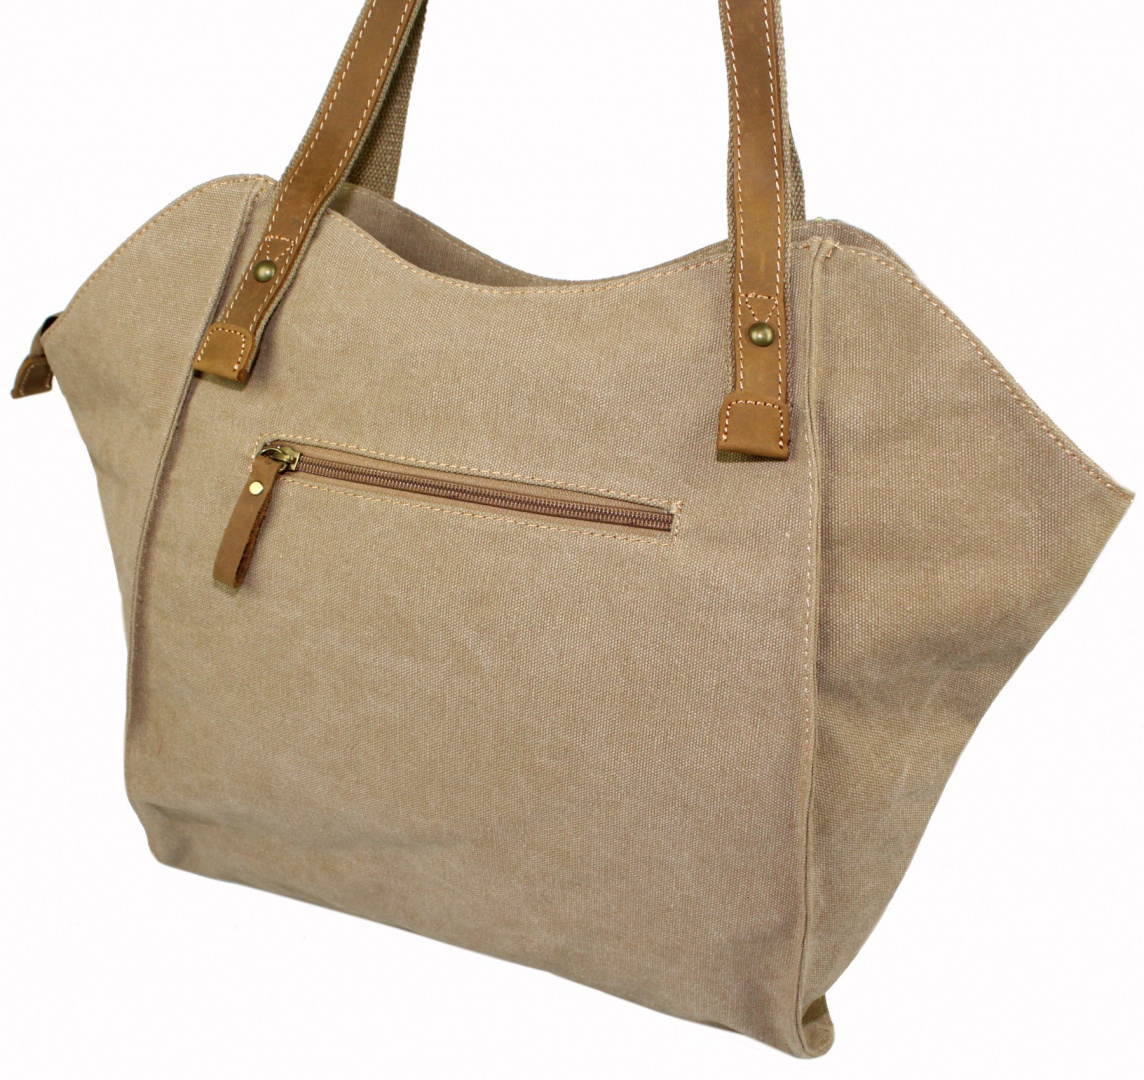 Torebka Skórzana Jennifer Jones Shopper Bag CANVAS Z Elementami Skórzanymi SŁOMIANY JJ4557